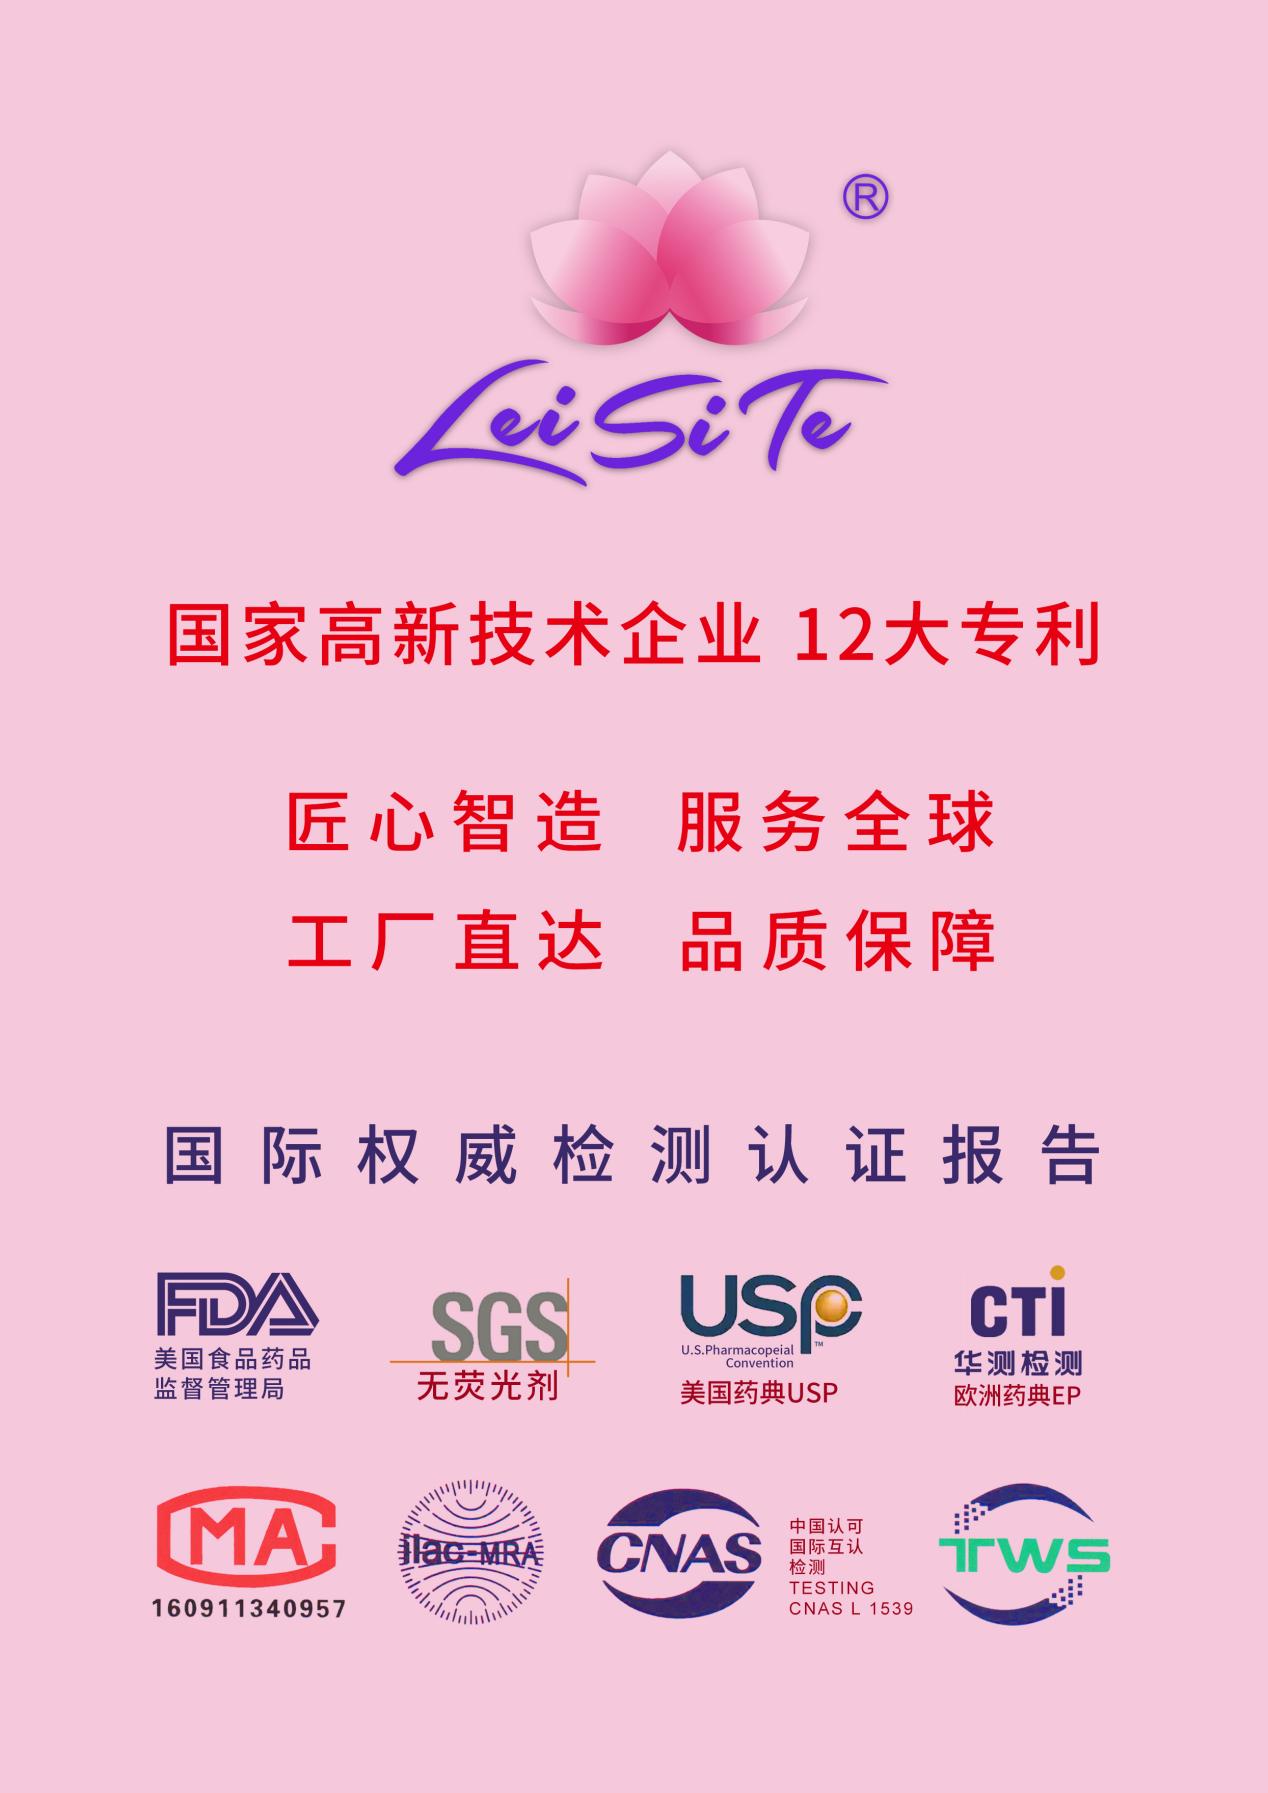 深圳市康乐美科技有限公司蕾丝特卫生用品经检测不含可迁移性荧光物质